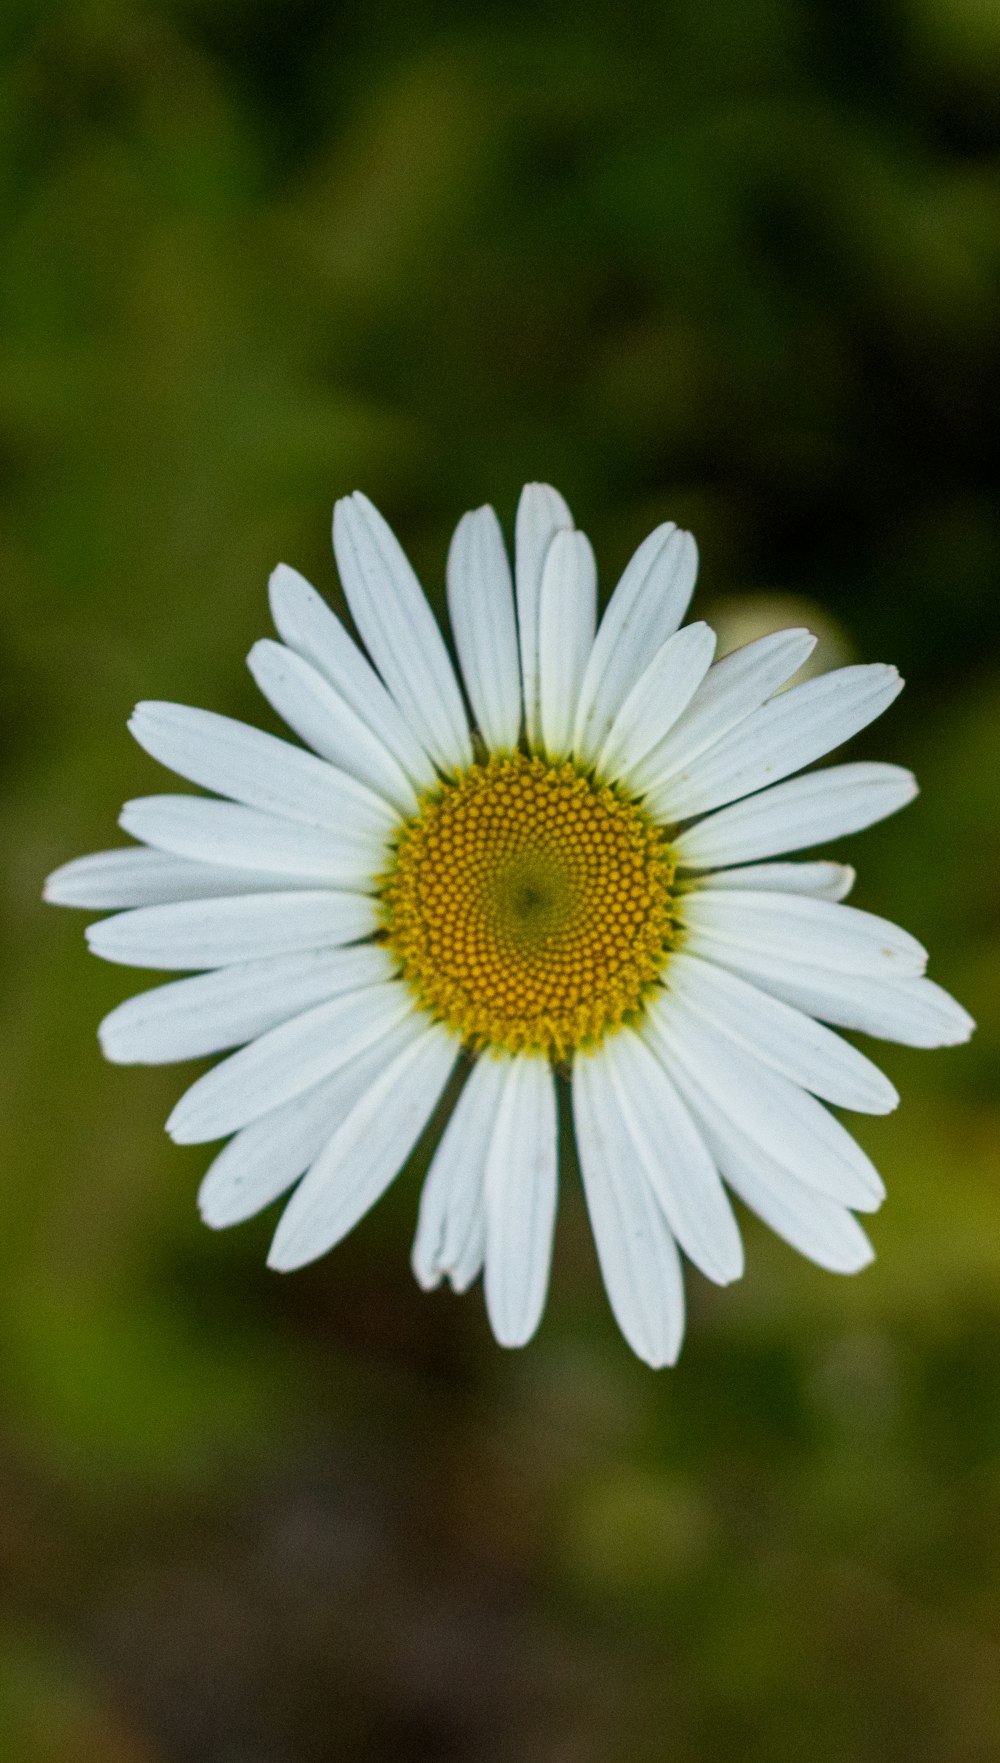 um close up de uma flor branca com um centro amarelo